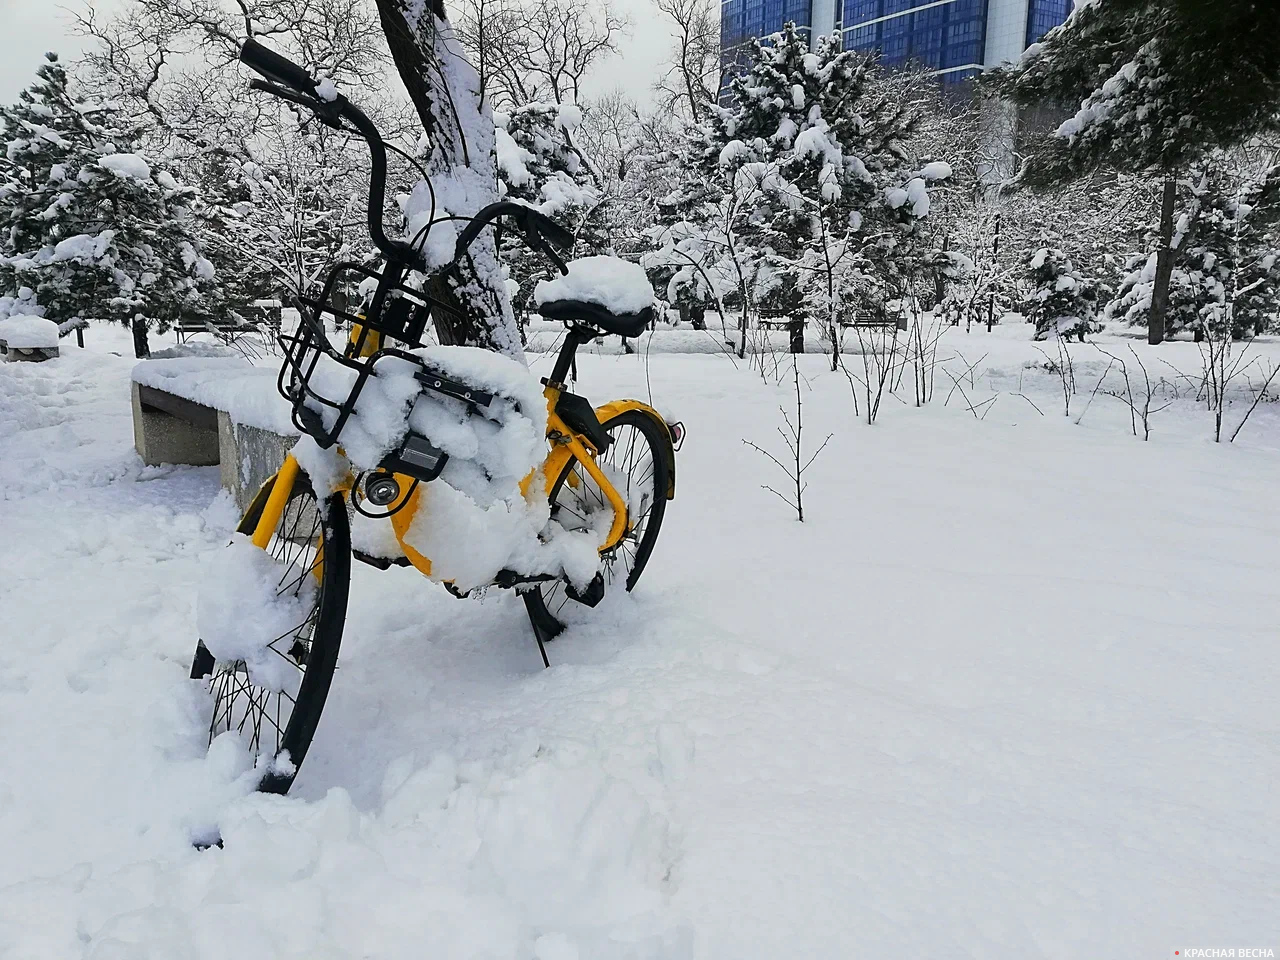 Велосипед в снегу